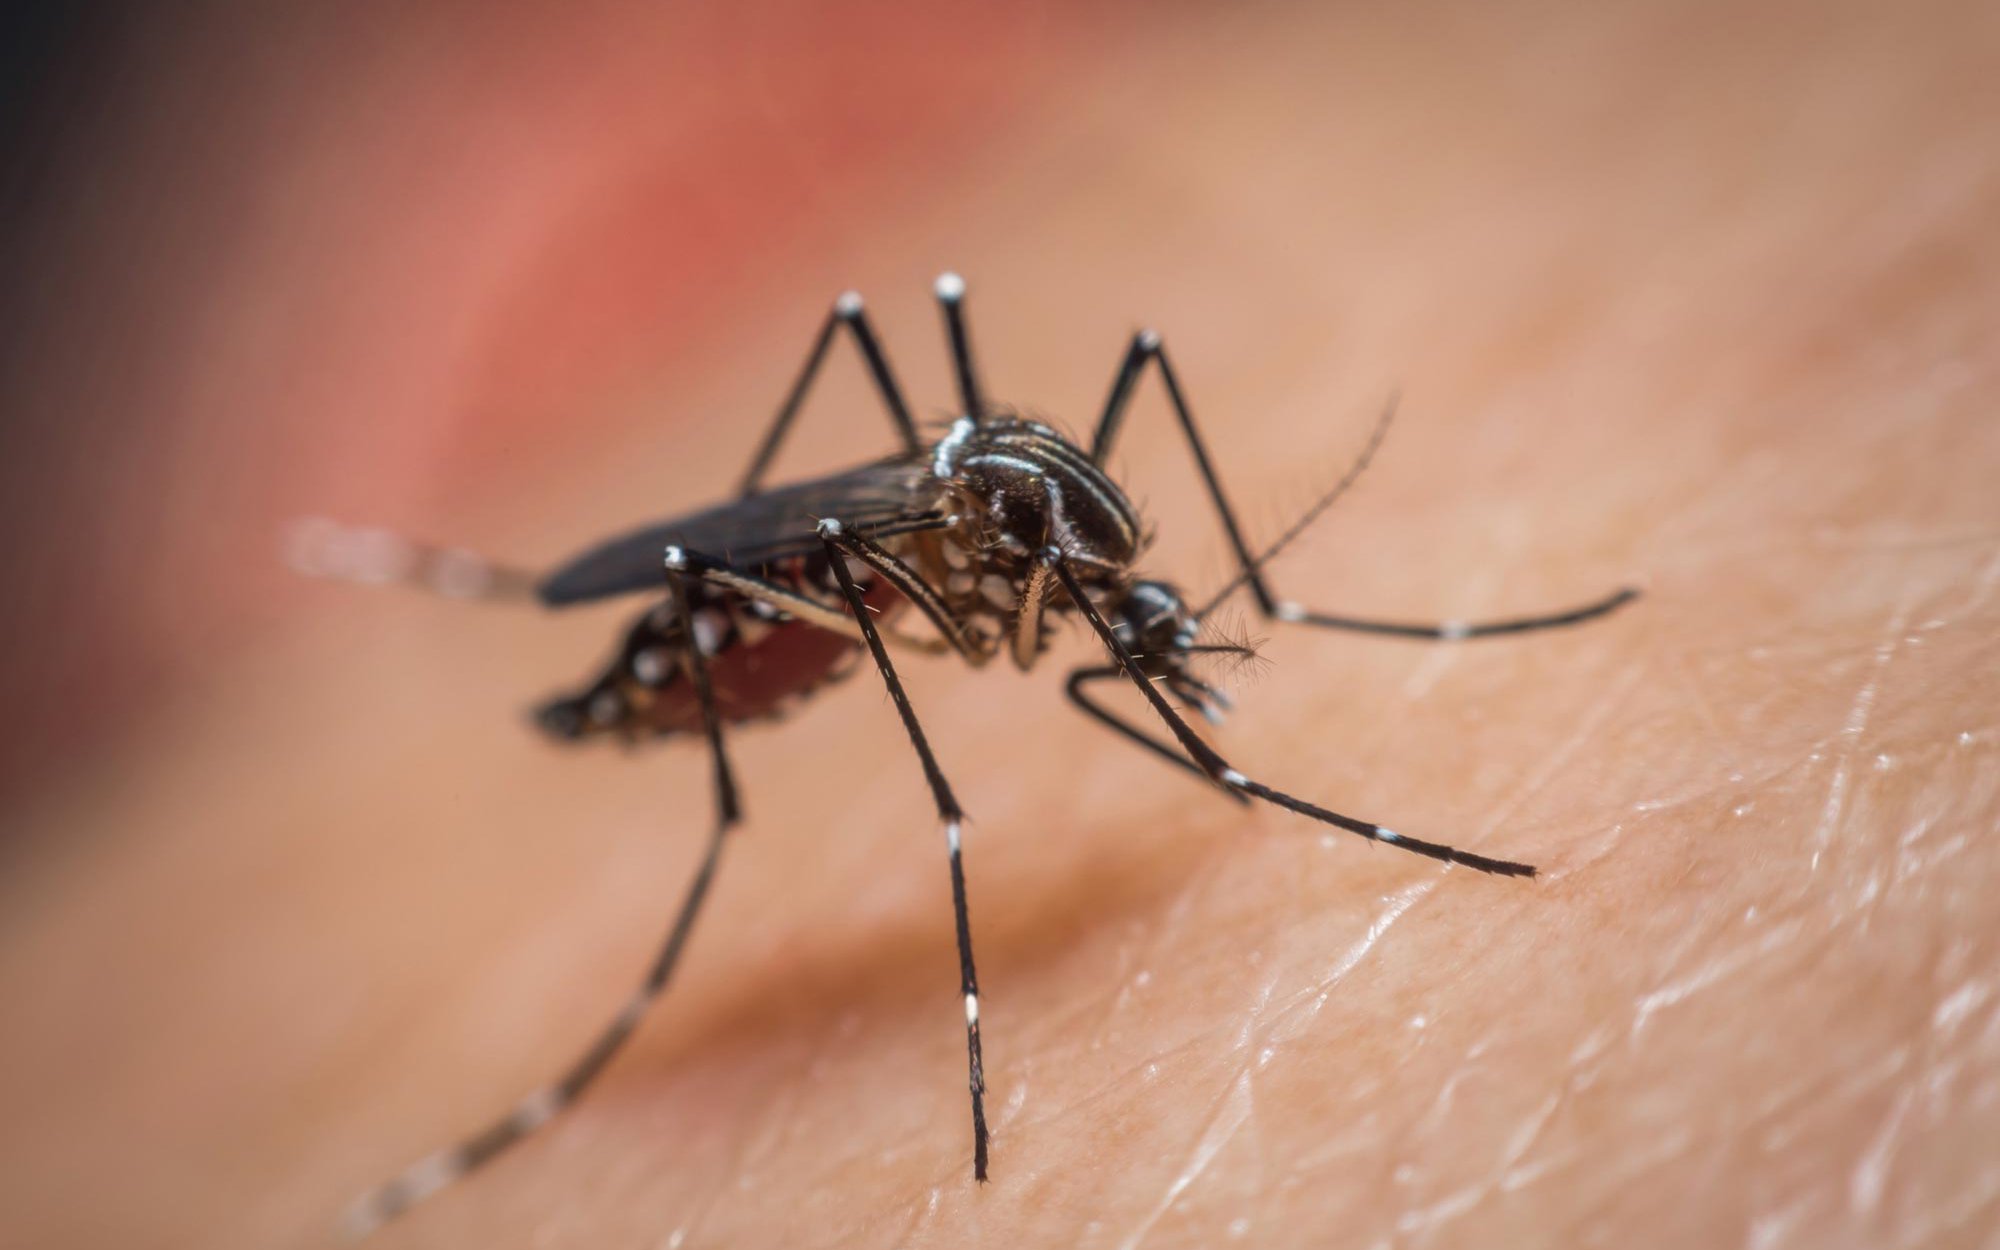 Vì sao trong một nhóm luôn có người bị muỗi đốt nhiều hơn, nguy cơ sốt xuất huyết tiềm ẩn